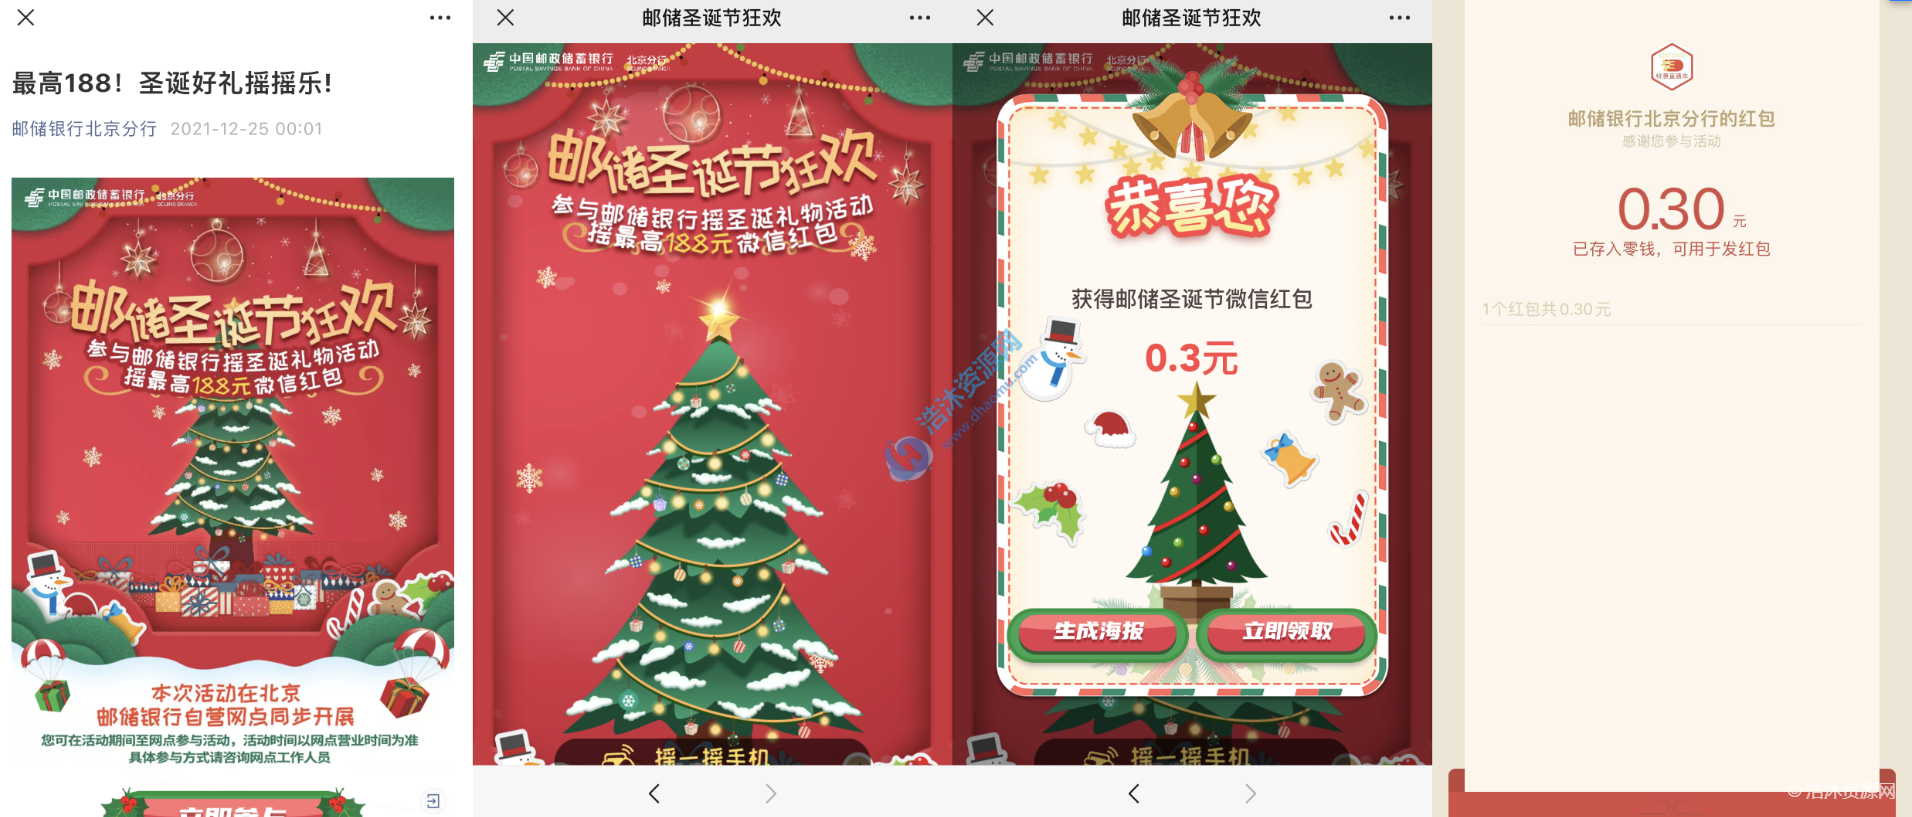 邮储银行北京分行微信公众号圣诞好礼摇摇乐！最高188元微信现金红包，亲测到账0.3元